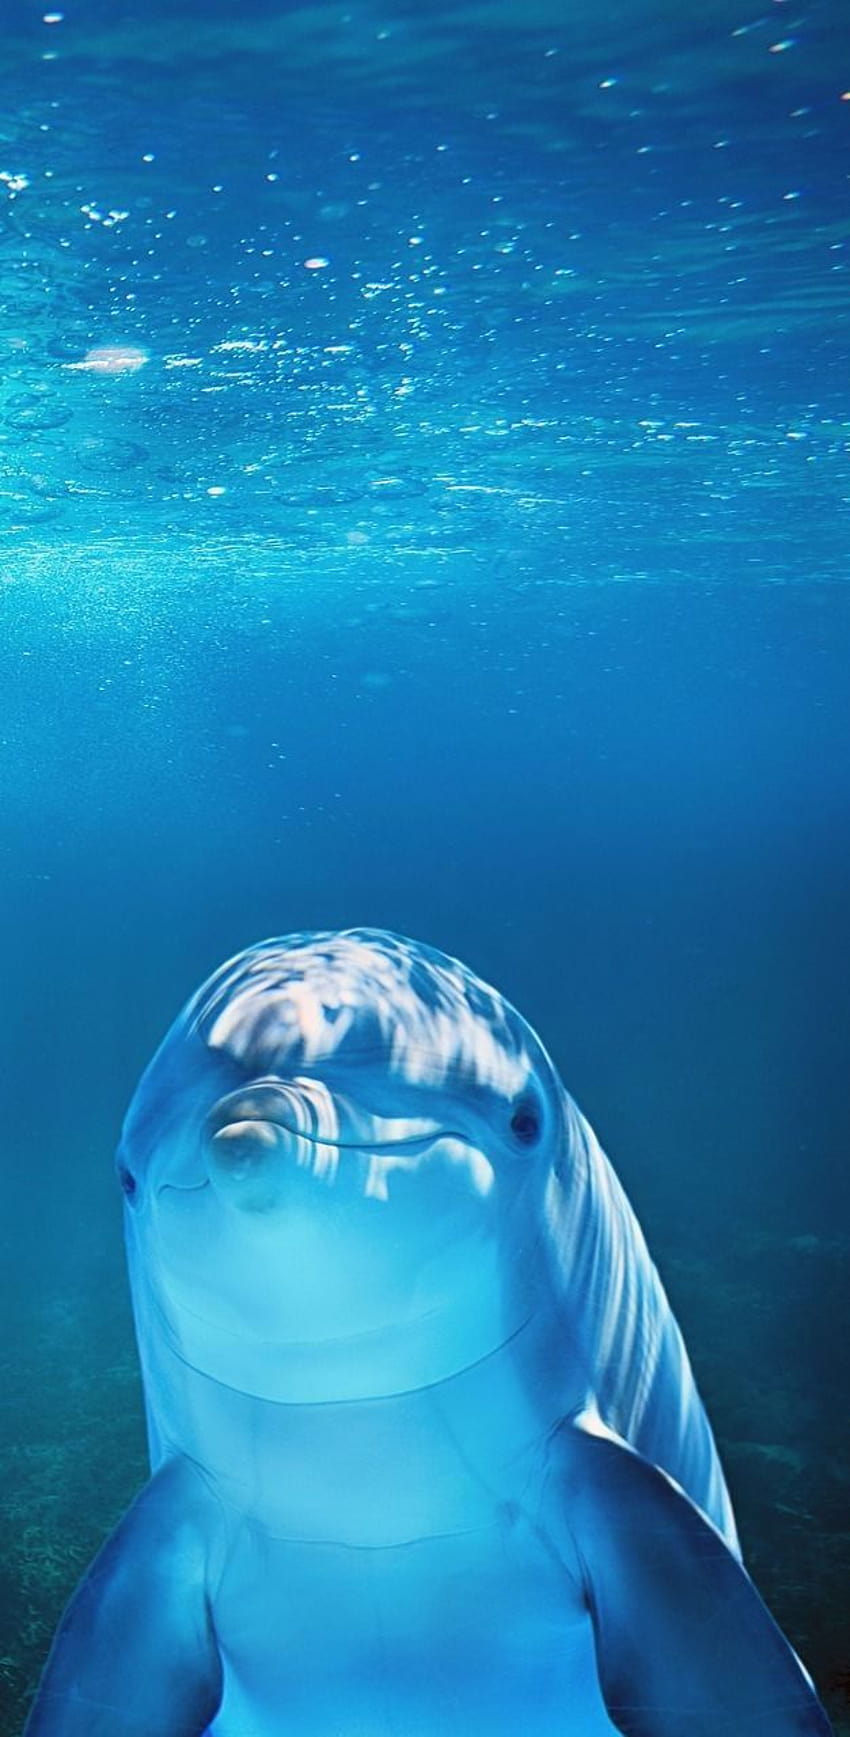 Delfin pod wodą., słodkie zwierzęta morskie Tapeta na telefon HD